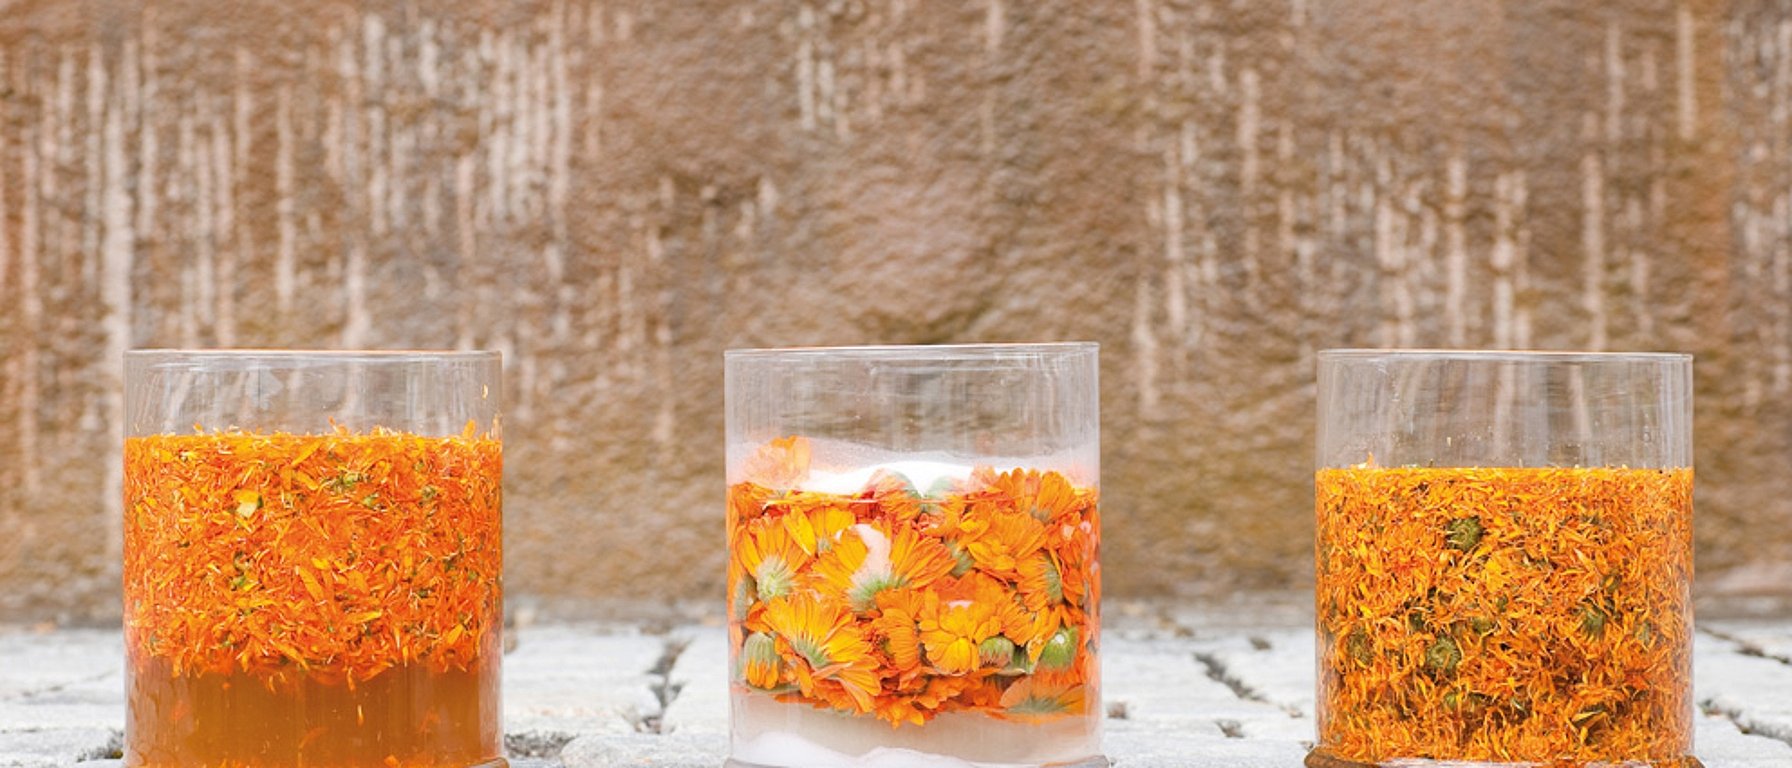 Calendulabloemen in glazen